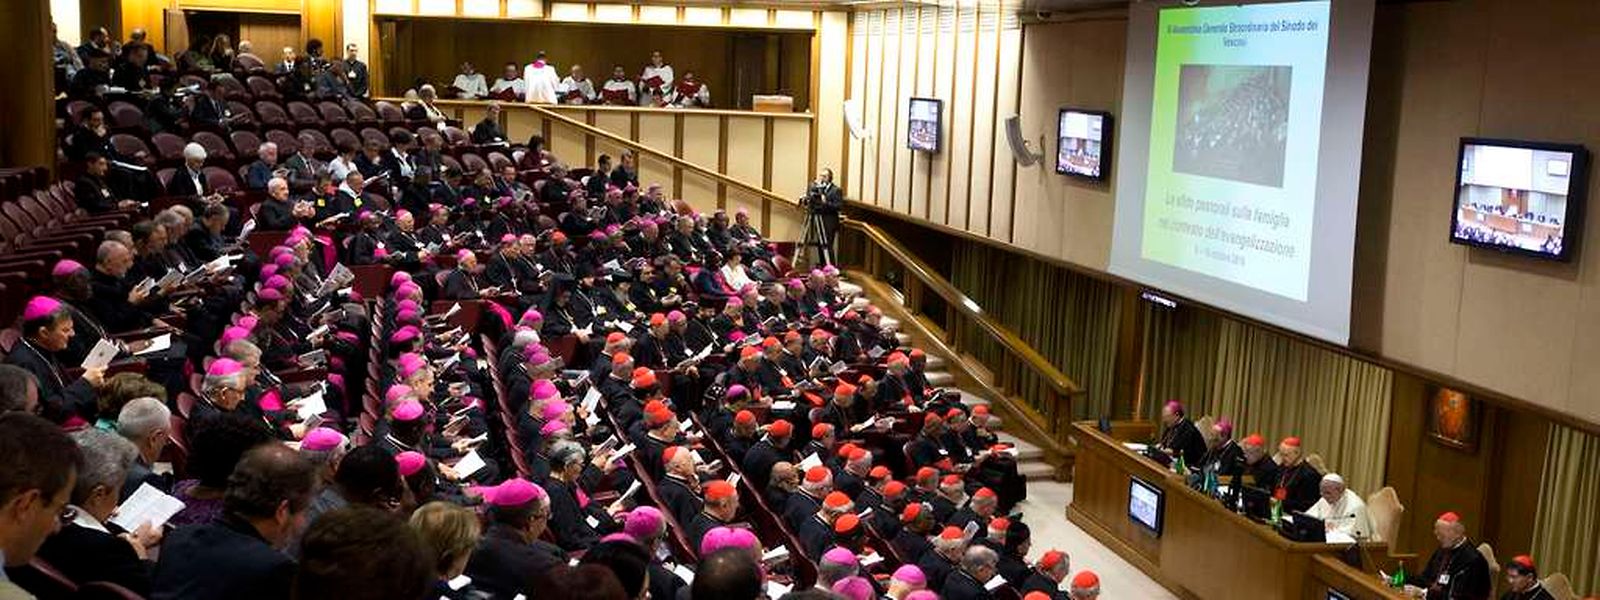 In die Aula der Bischöfe (hier bei der Eröffnungsversammlung am 6. Oktober) ist die Realität eingezogen, meint Bischofsvikar Leo Wagener.